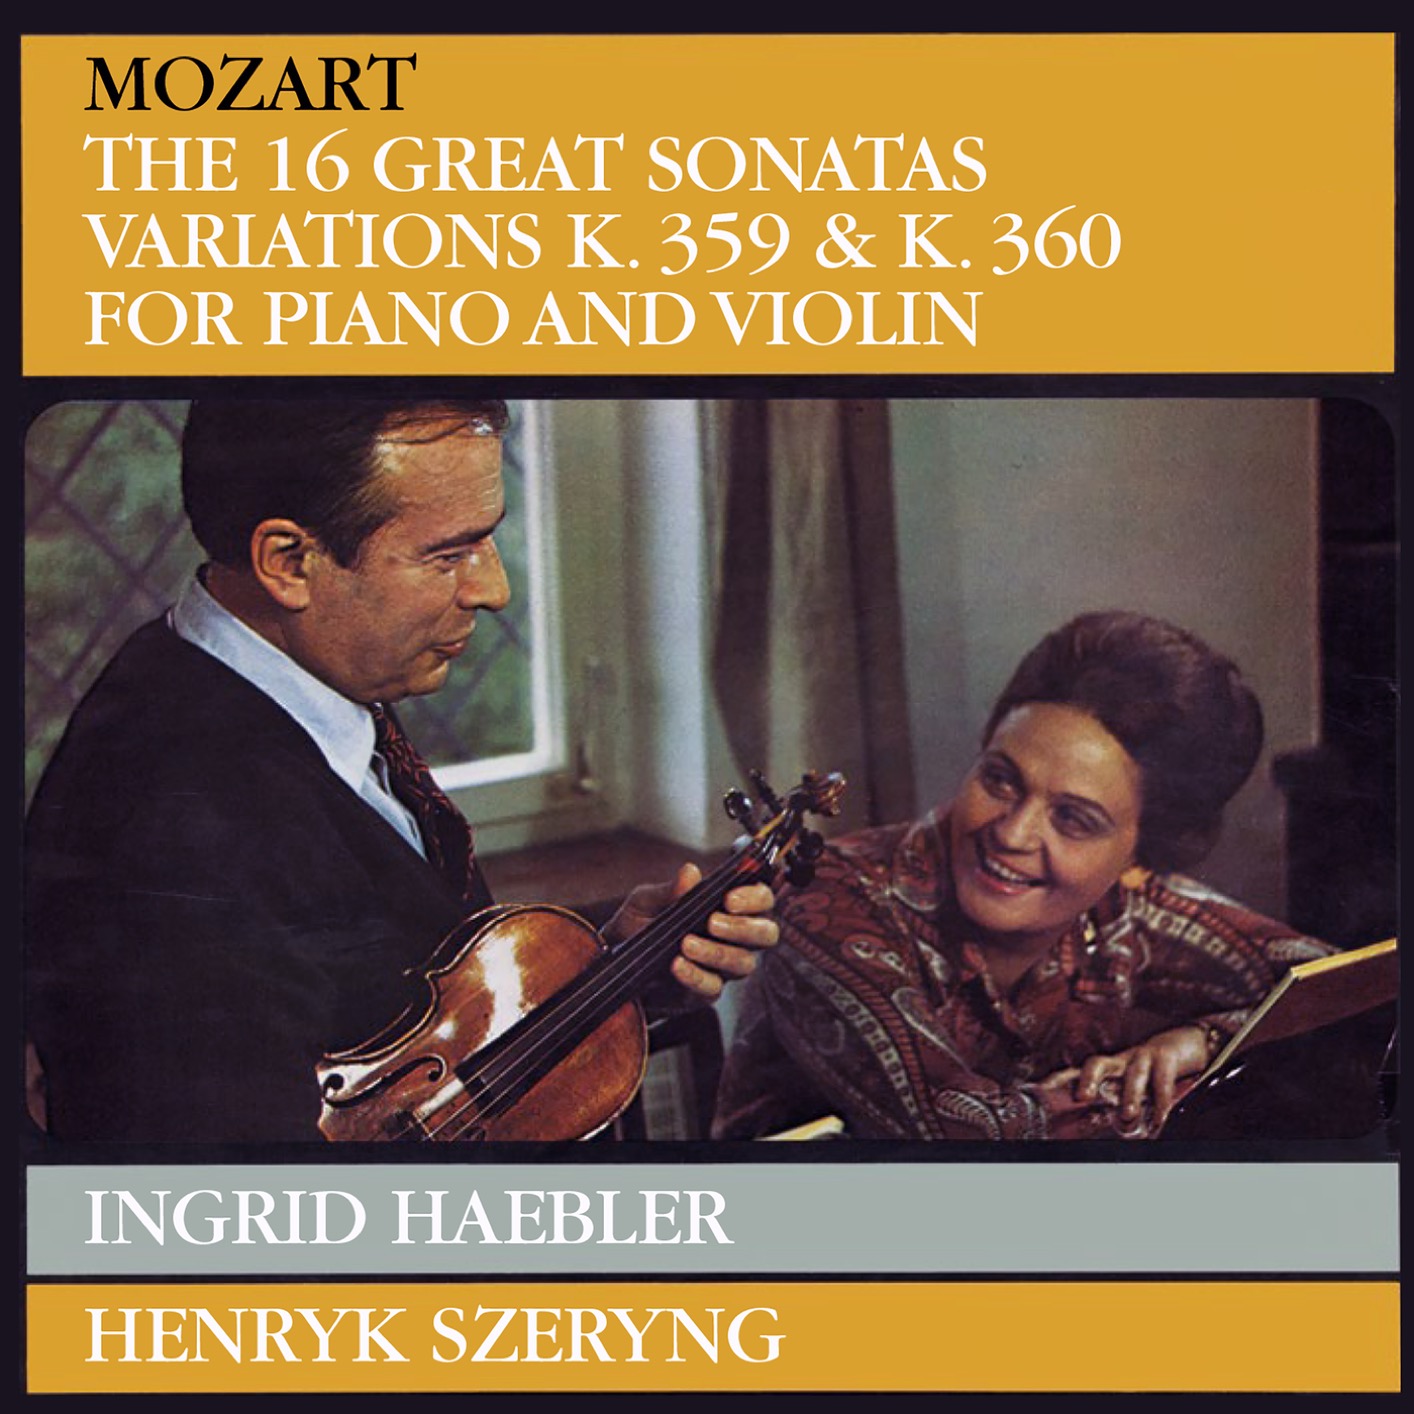 Henryk Szeryng & Ingrid Haebler – Mozart: Violin Sonatas (Remastered) (2018) [Official Digital Download 24bit/96kHz]